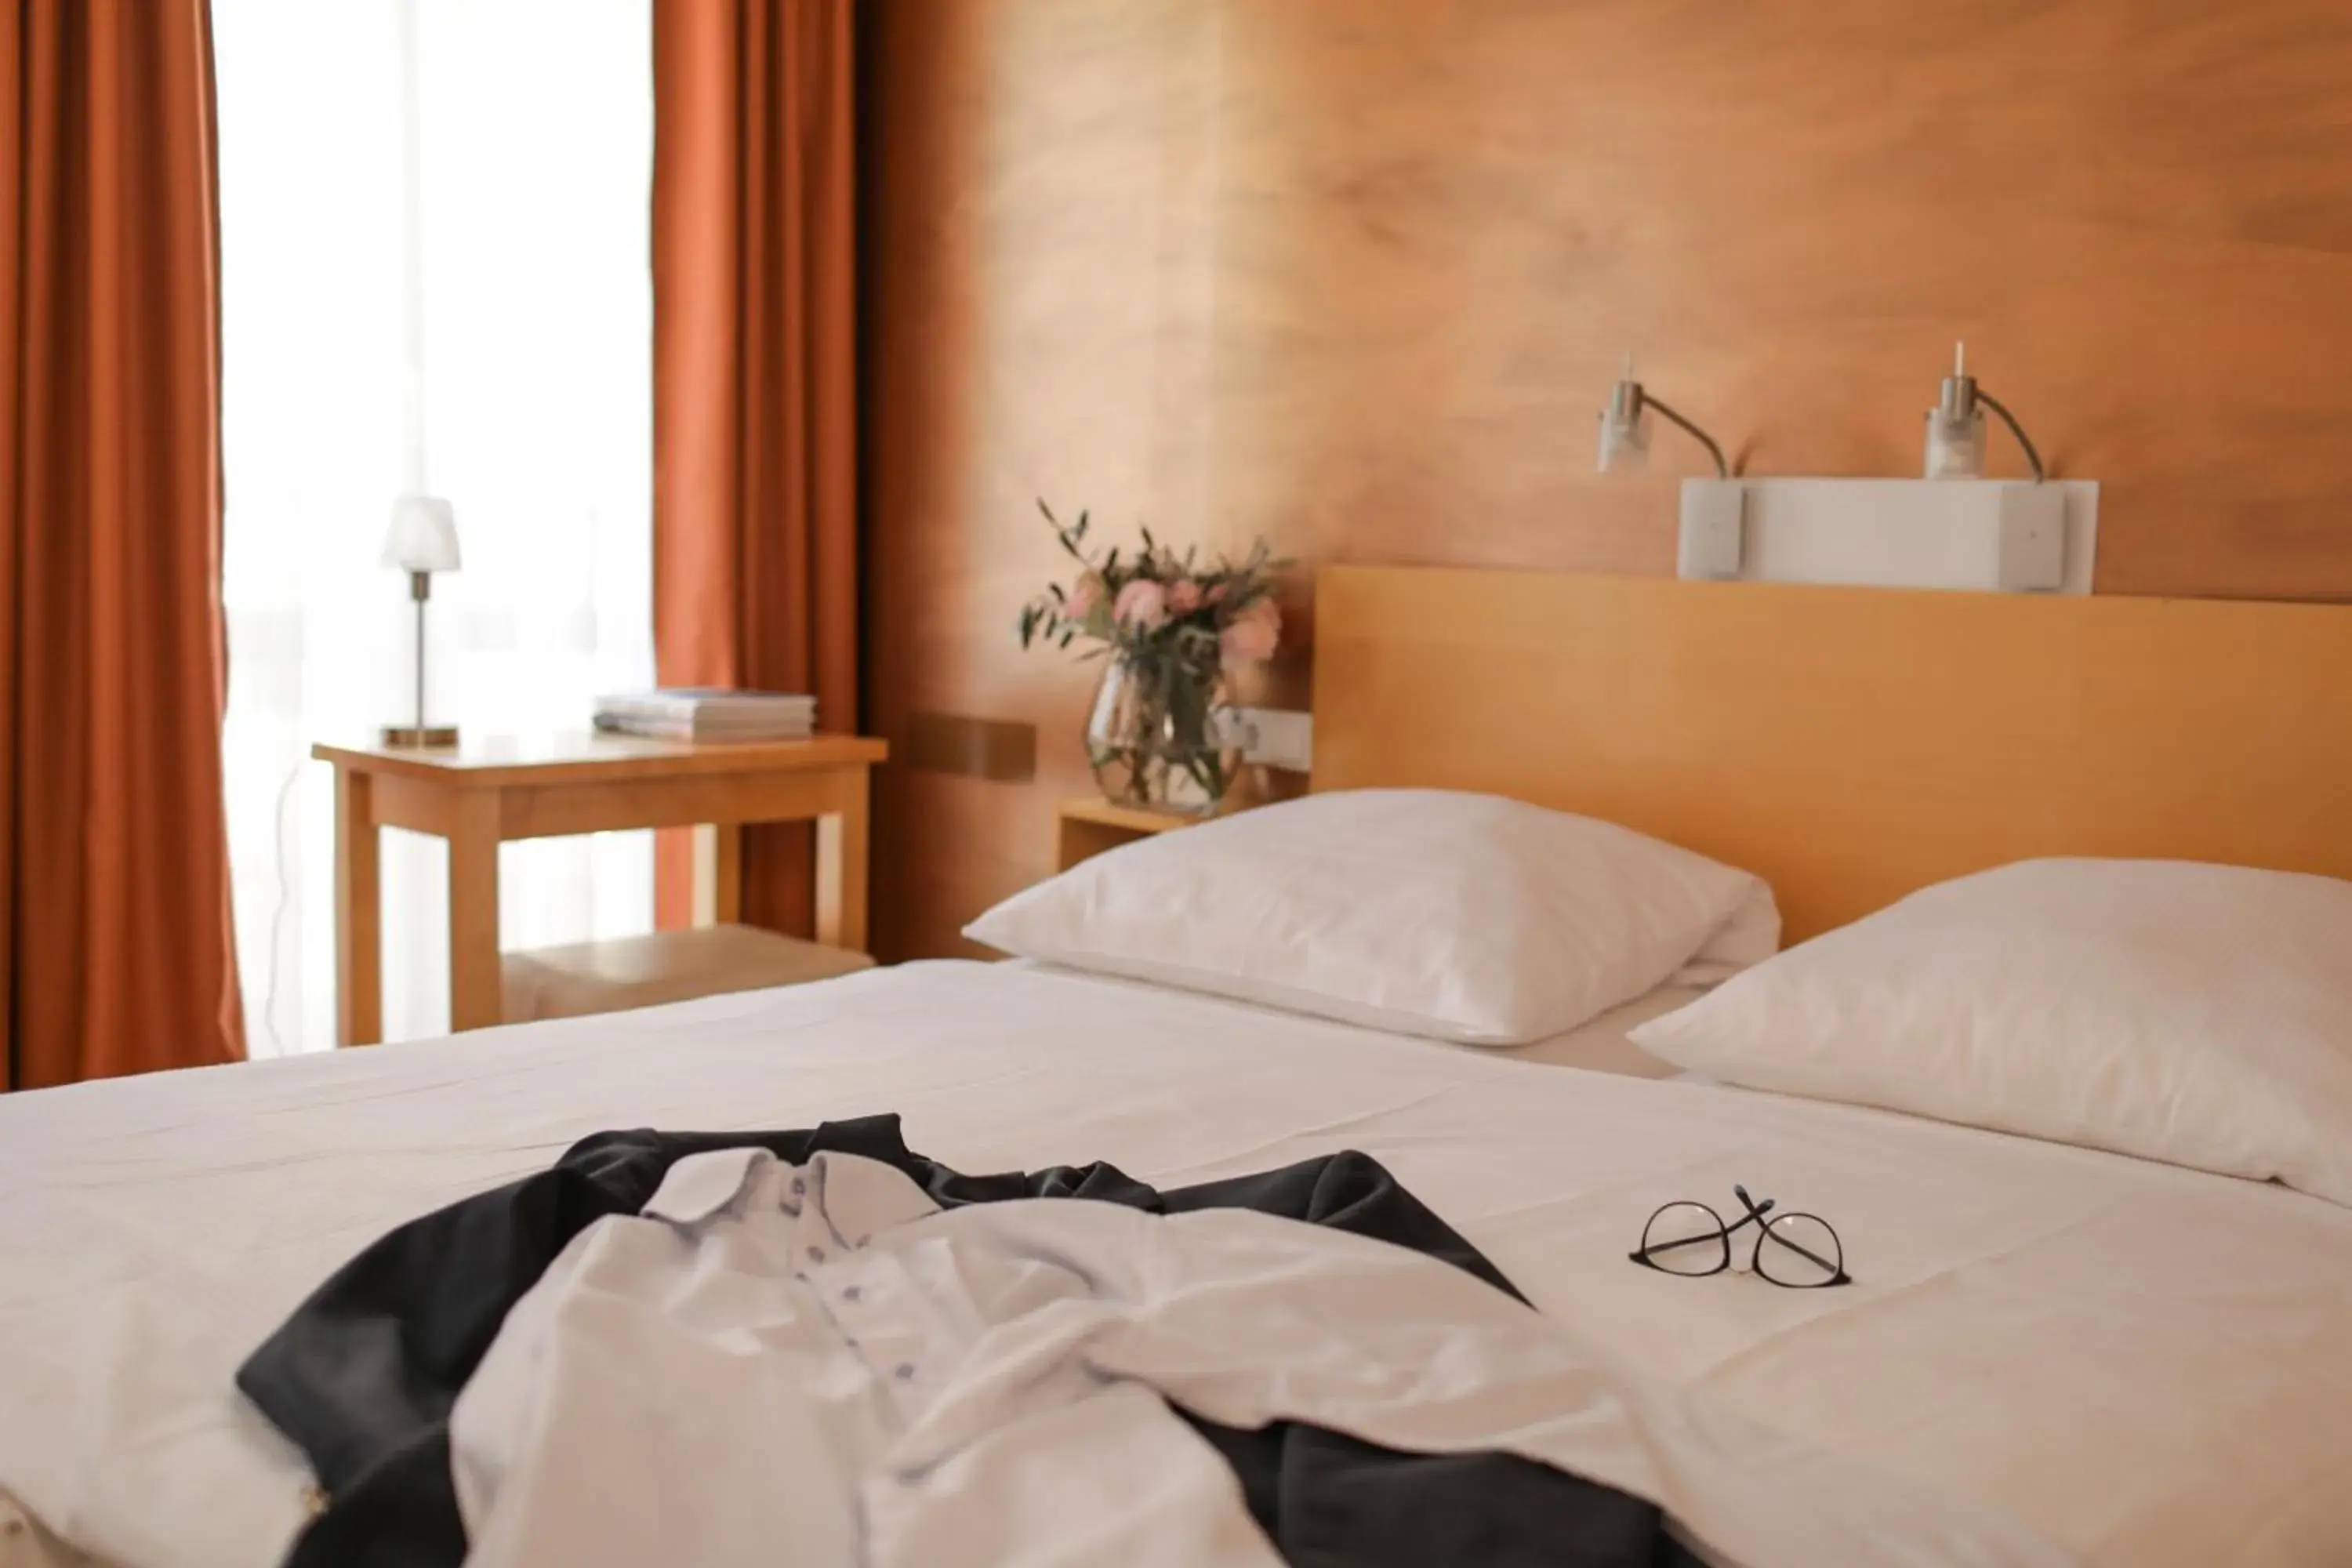 Other, Bed in Town Hotel Wiesbaden - kleines Privathotel mit Self-Check-In in Bestlage